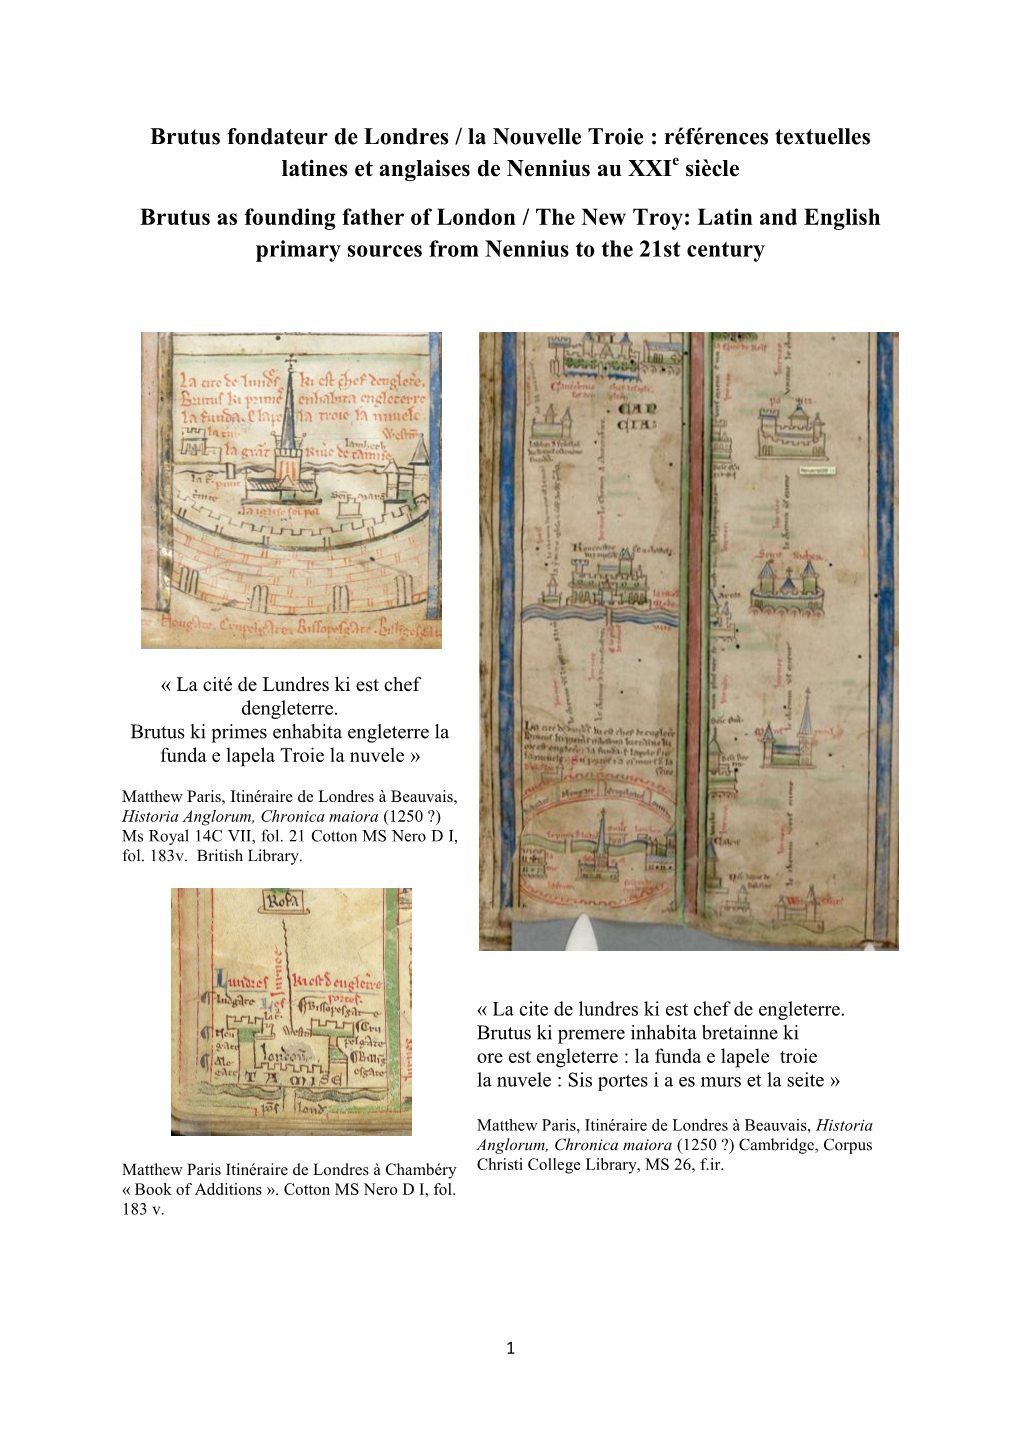 Brutus Fondateur De Londres / La Nouvelle Troie : Références Textuelles Latines Et Anglaises De Nennius Au Xxie Siècle